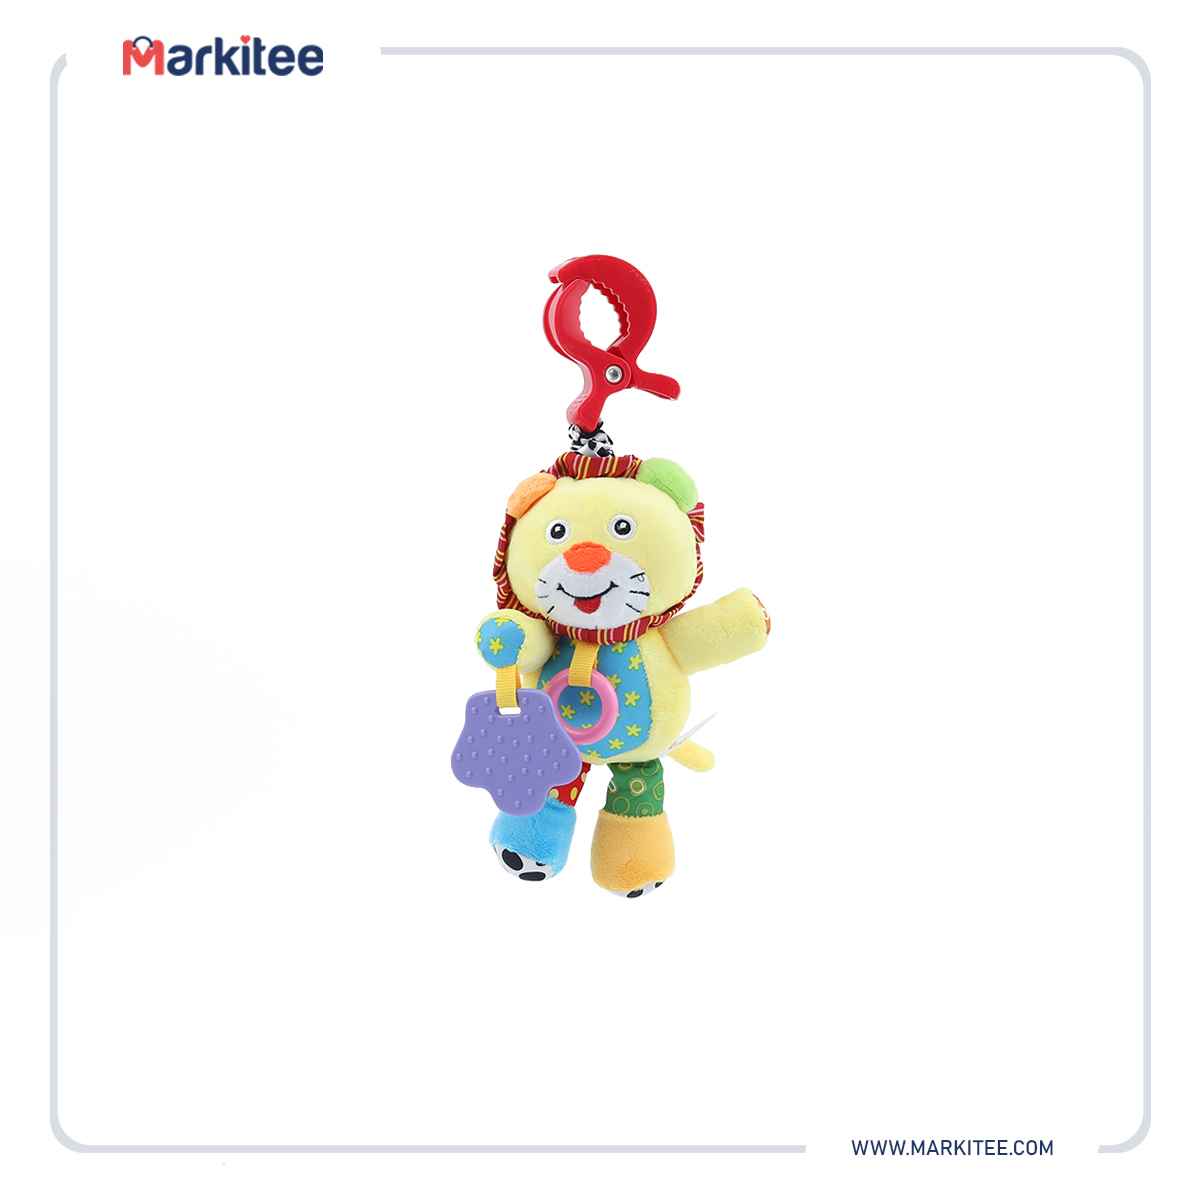 ماركيتي-markitee-20220626121827601_Markitee-toys-ty-535-4(1).JPG